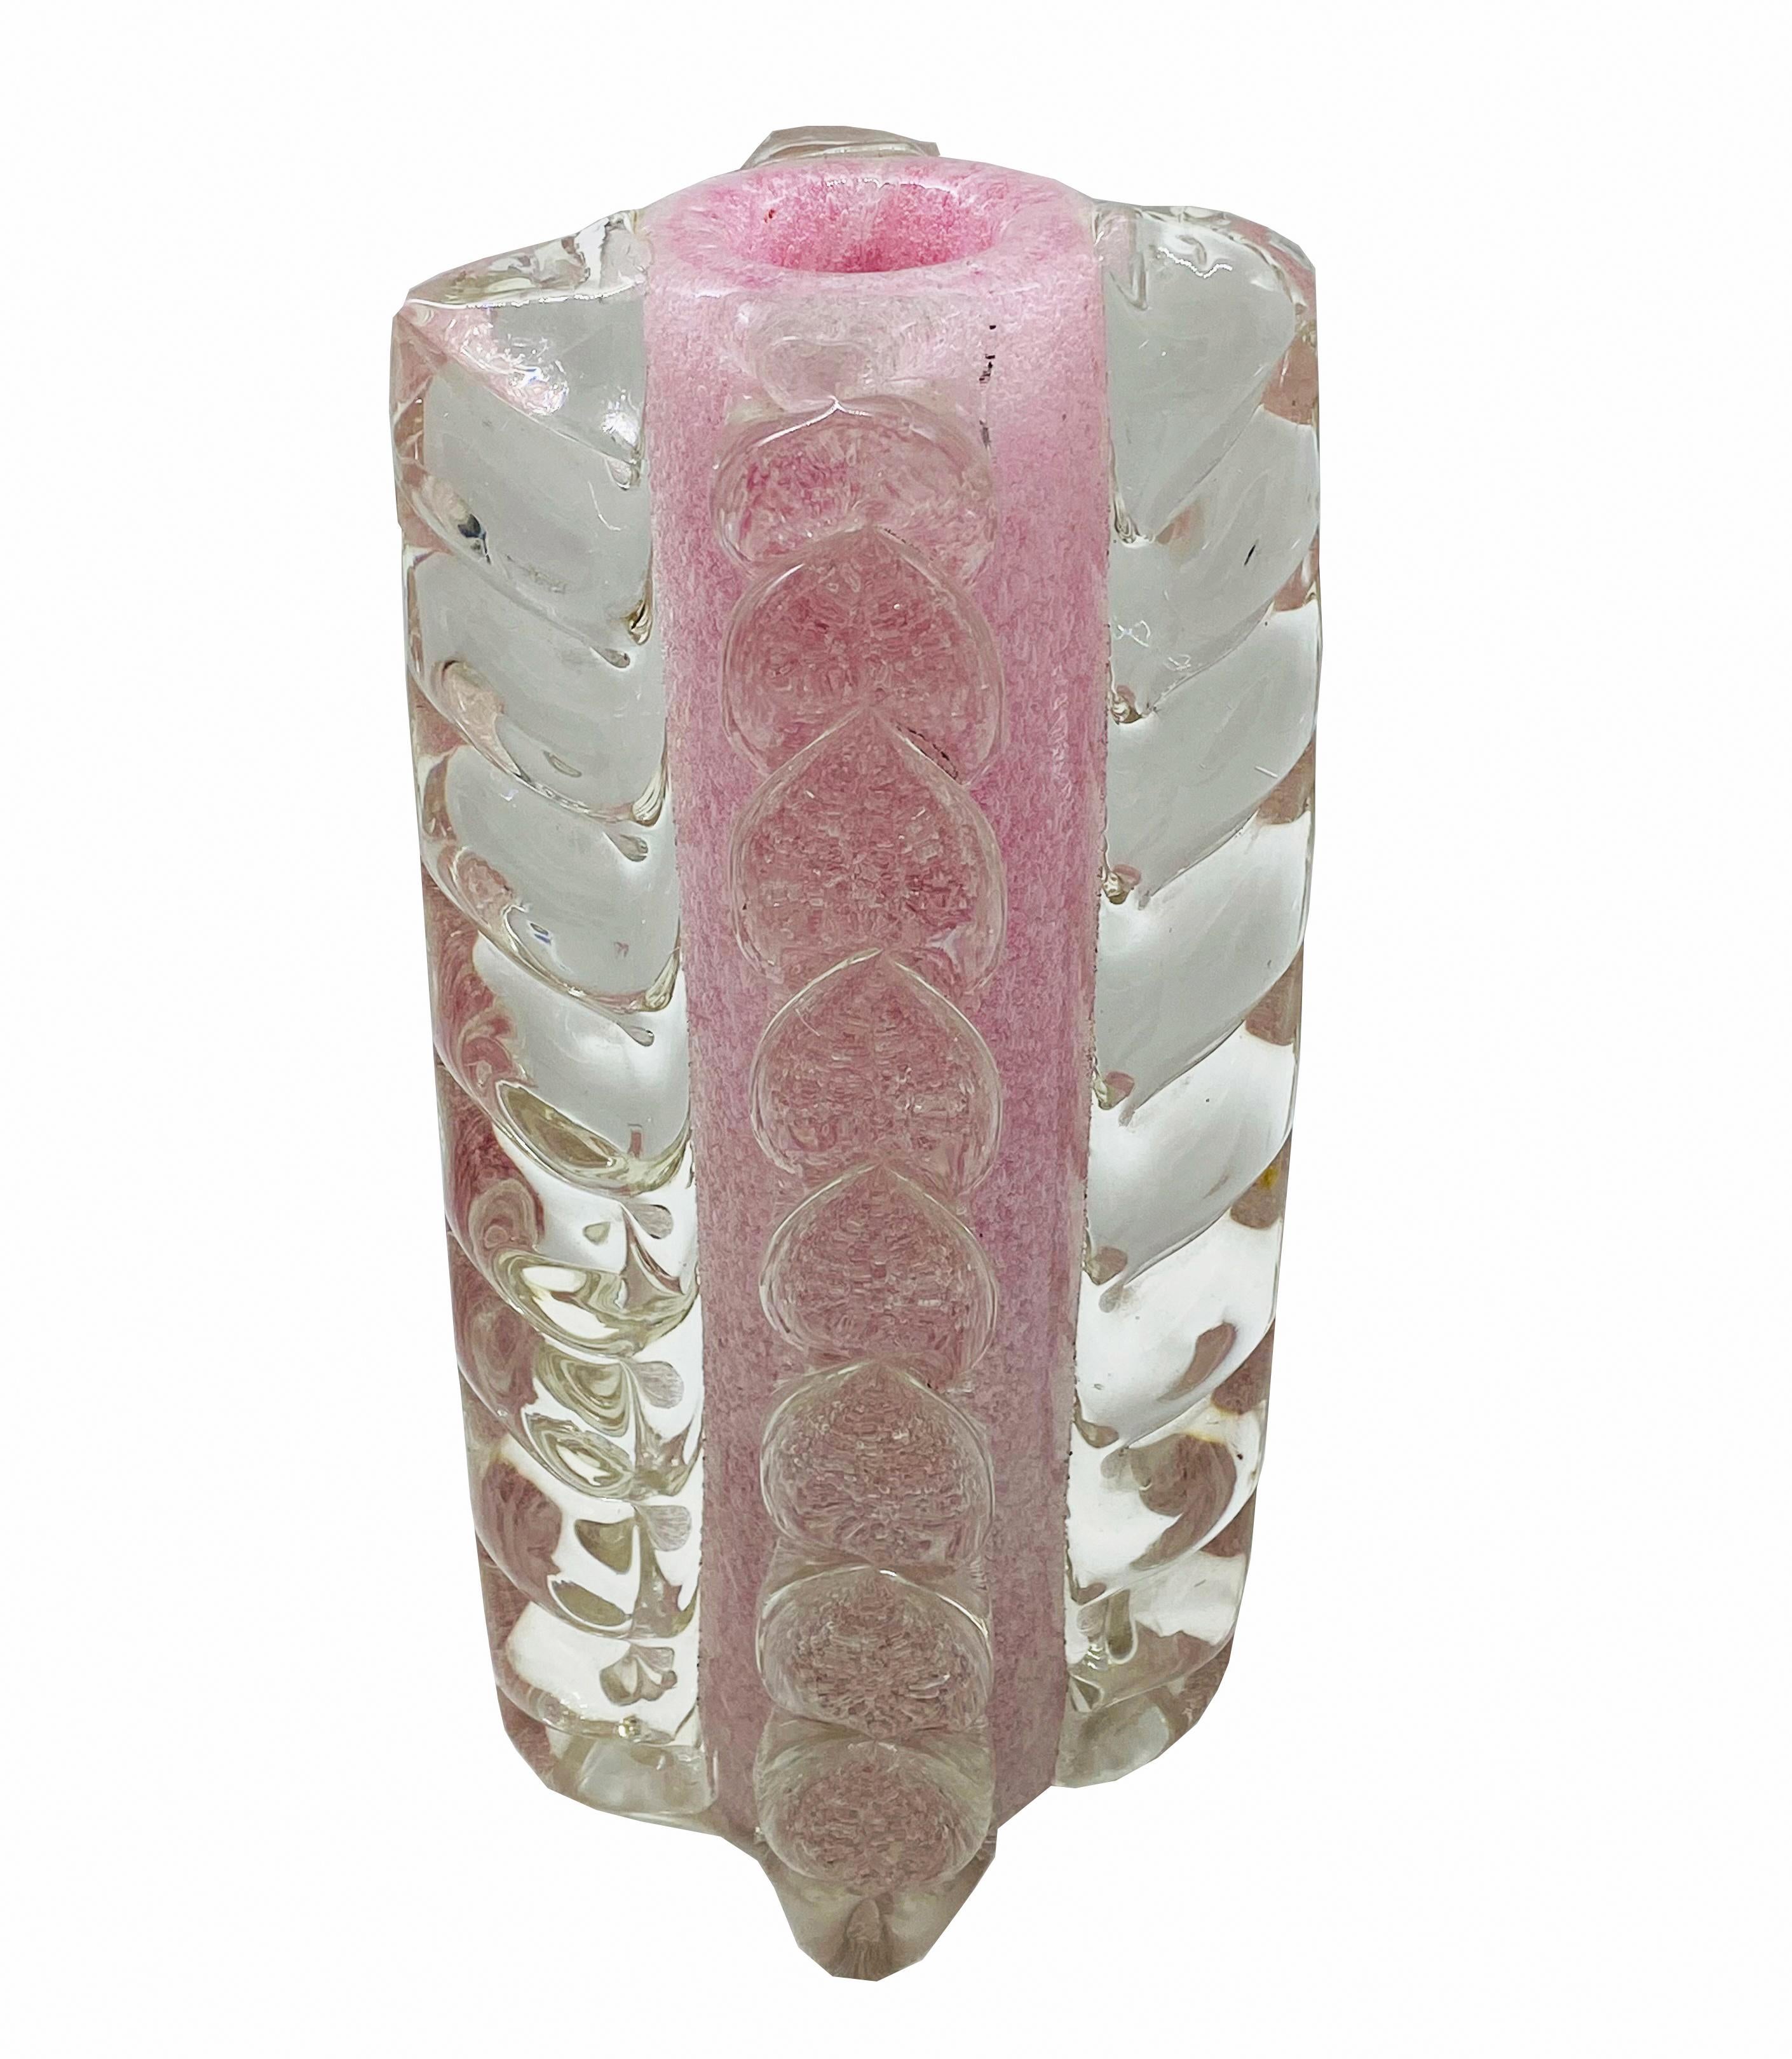 Un vase très rare Mod. Spuma di Mare en verre de Murano grouillant d'inclusions d'oxydes métalliques et application de grandes morises, par Ercole Barovier pour Barovier & Toso 1940. Faites un petit morceau de morise.